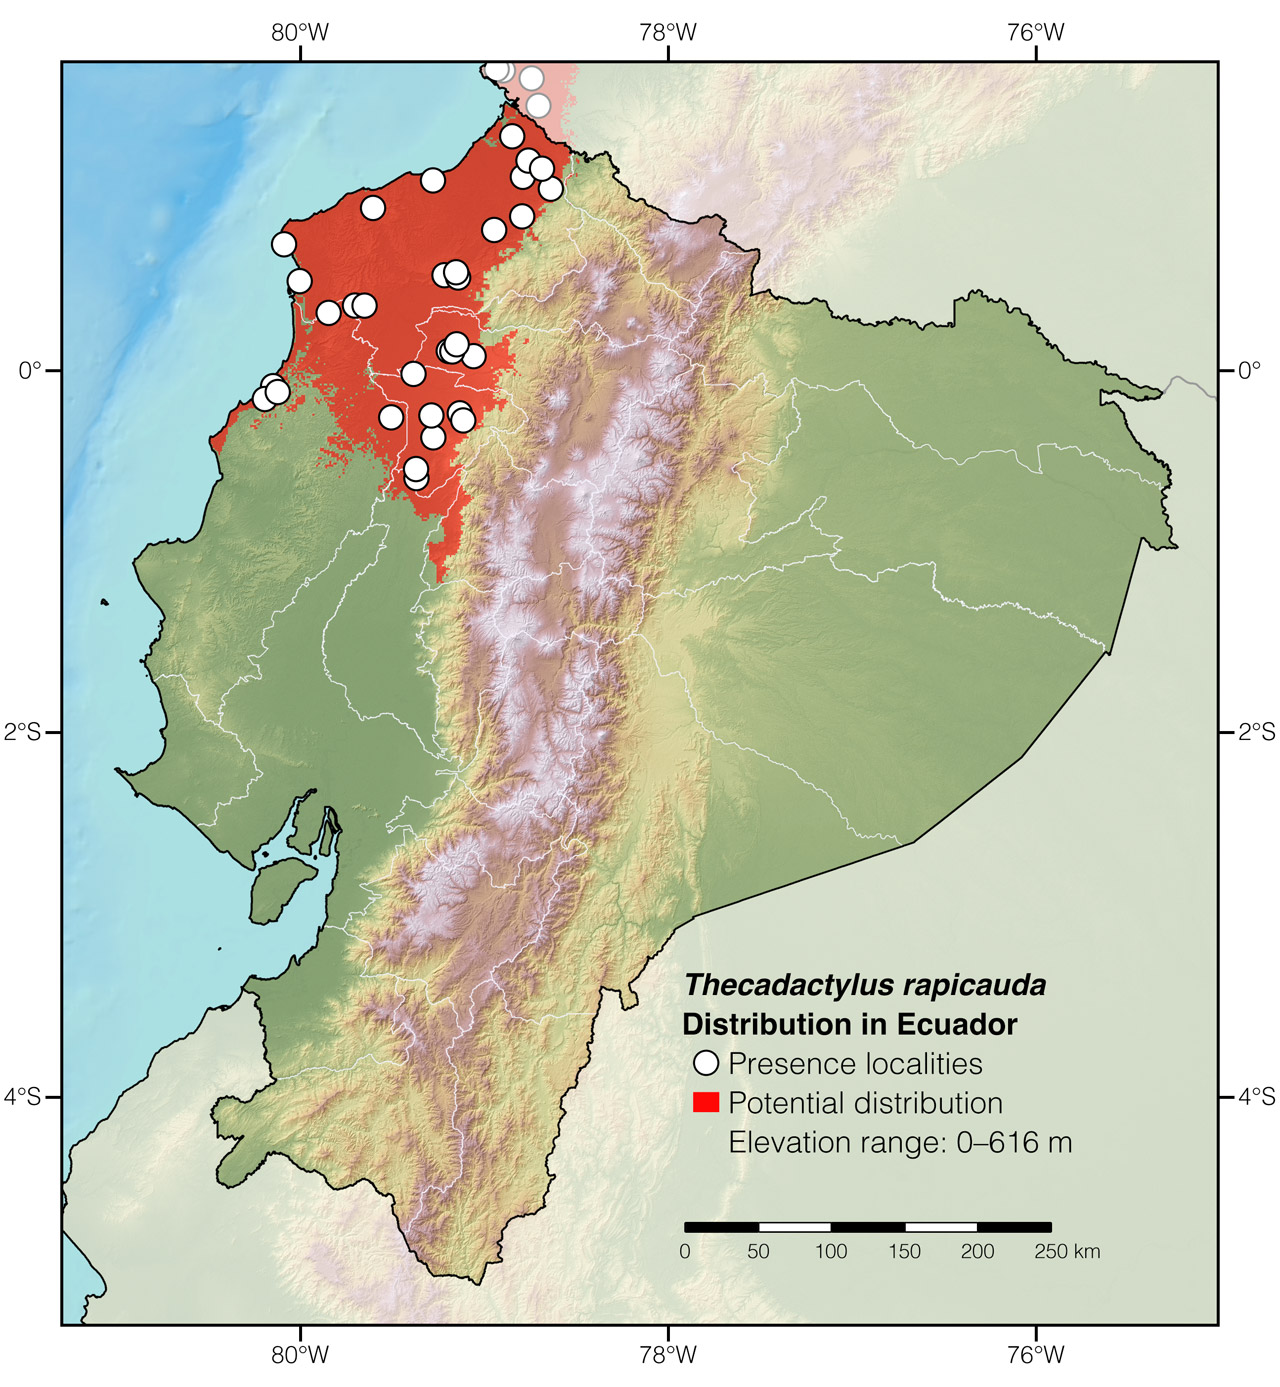 Distribution of Thecadactylus rapicauda in Ecuador